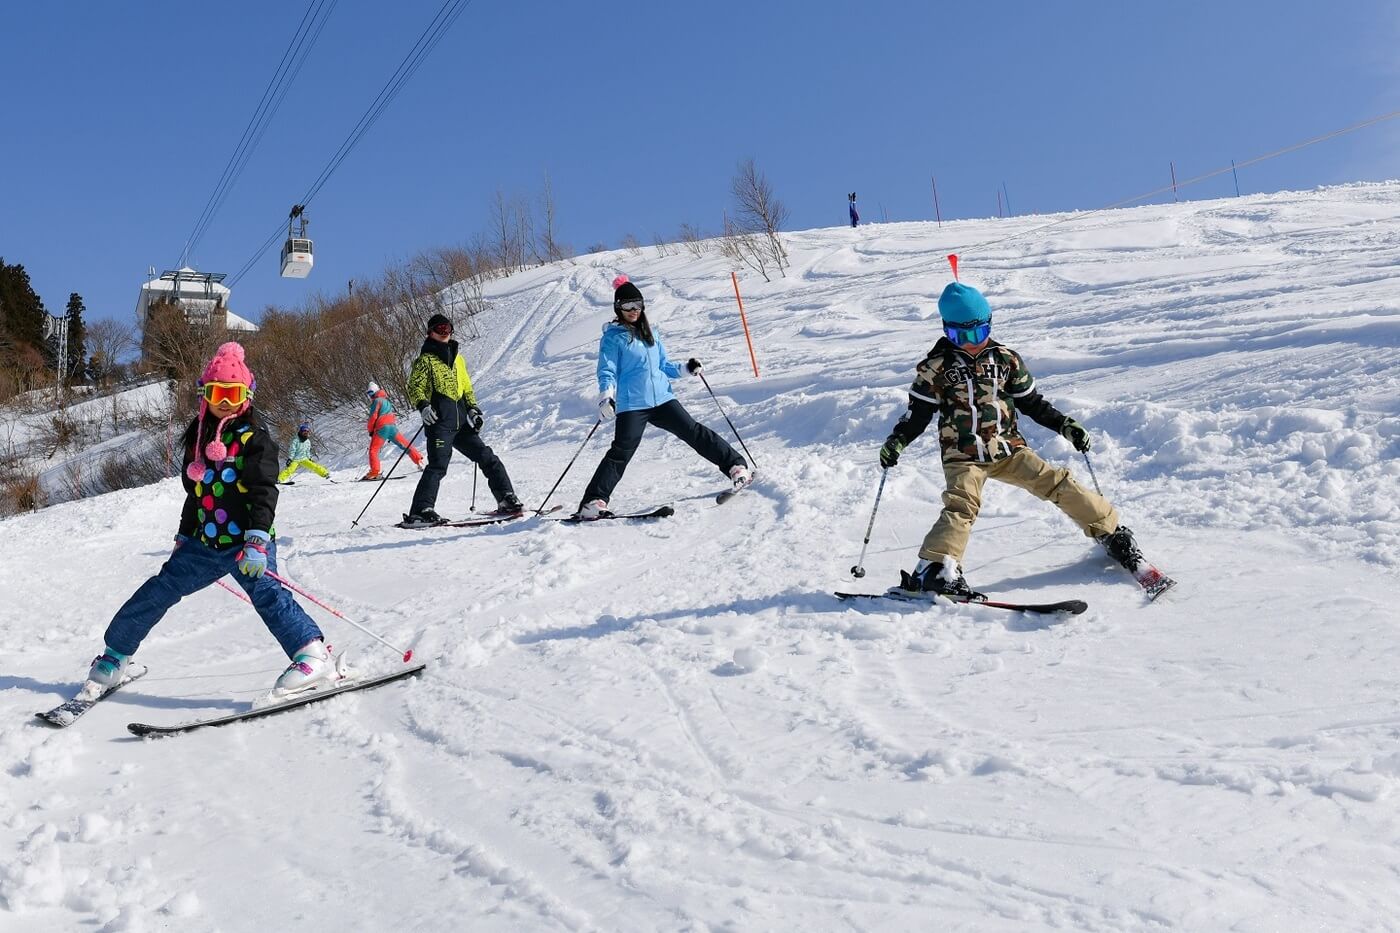 高原 スキー 場 湯沢 湯沢高原スキー場へ行く格安・激安のスキー&スノボツアー・旅行2021